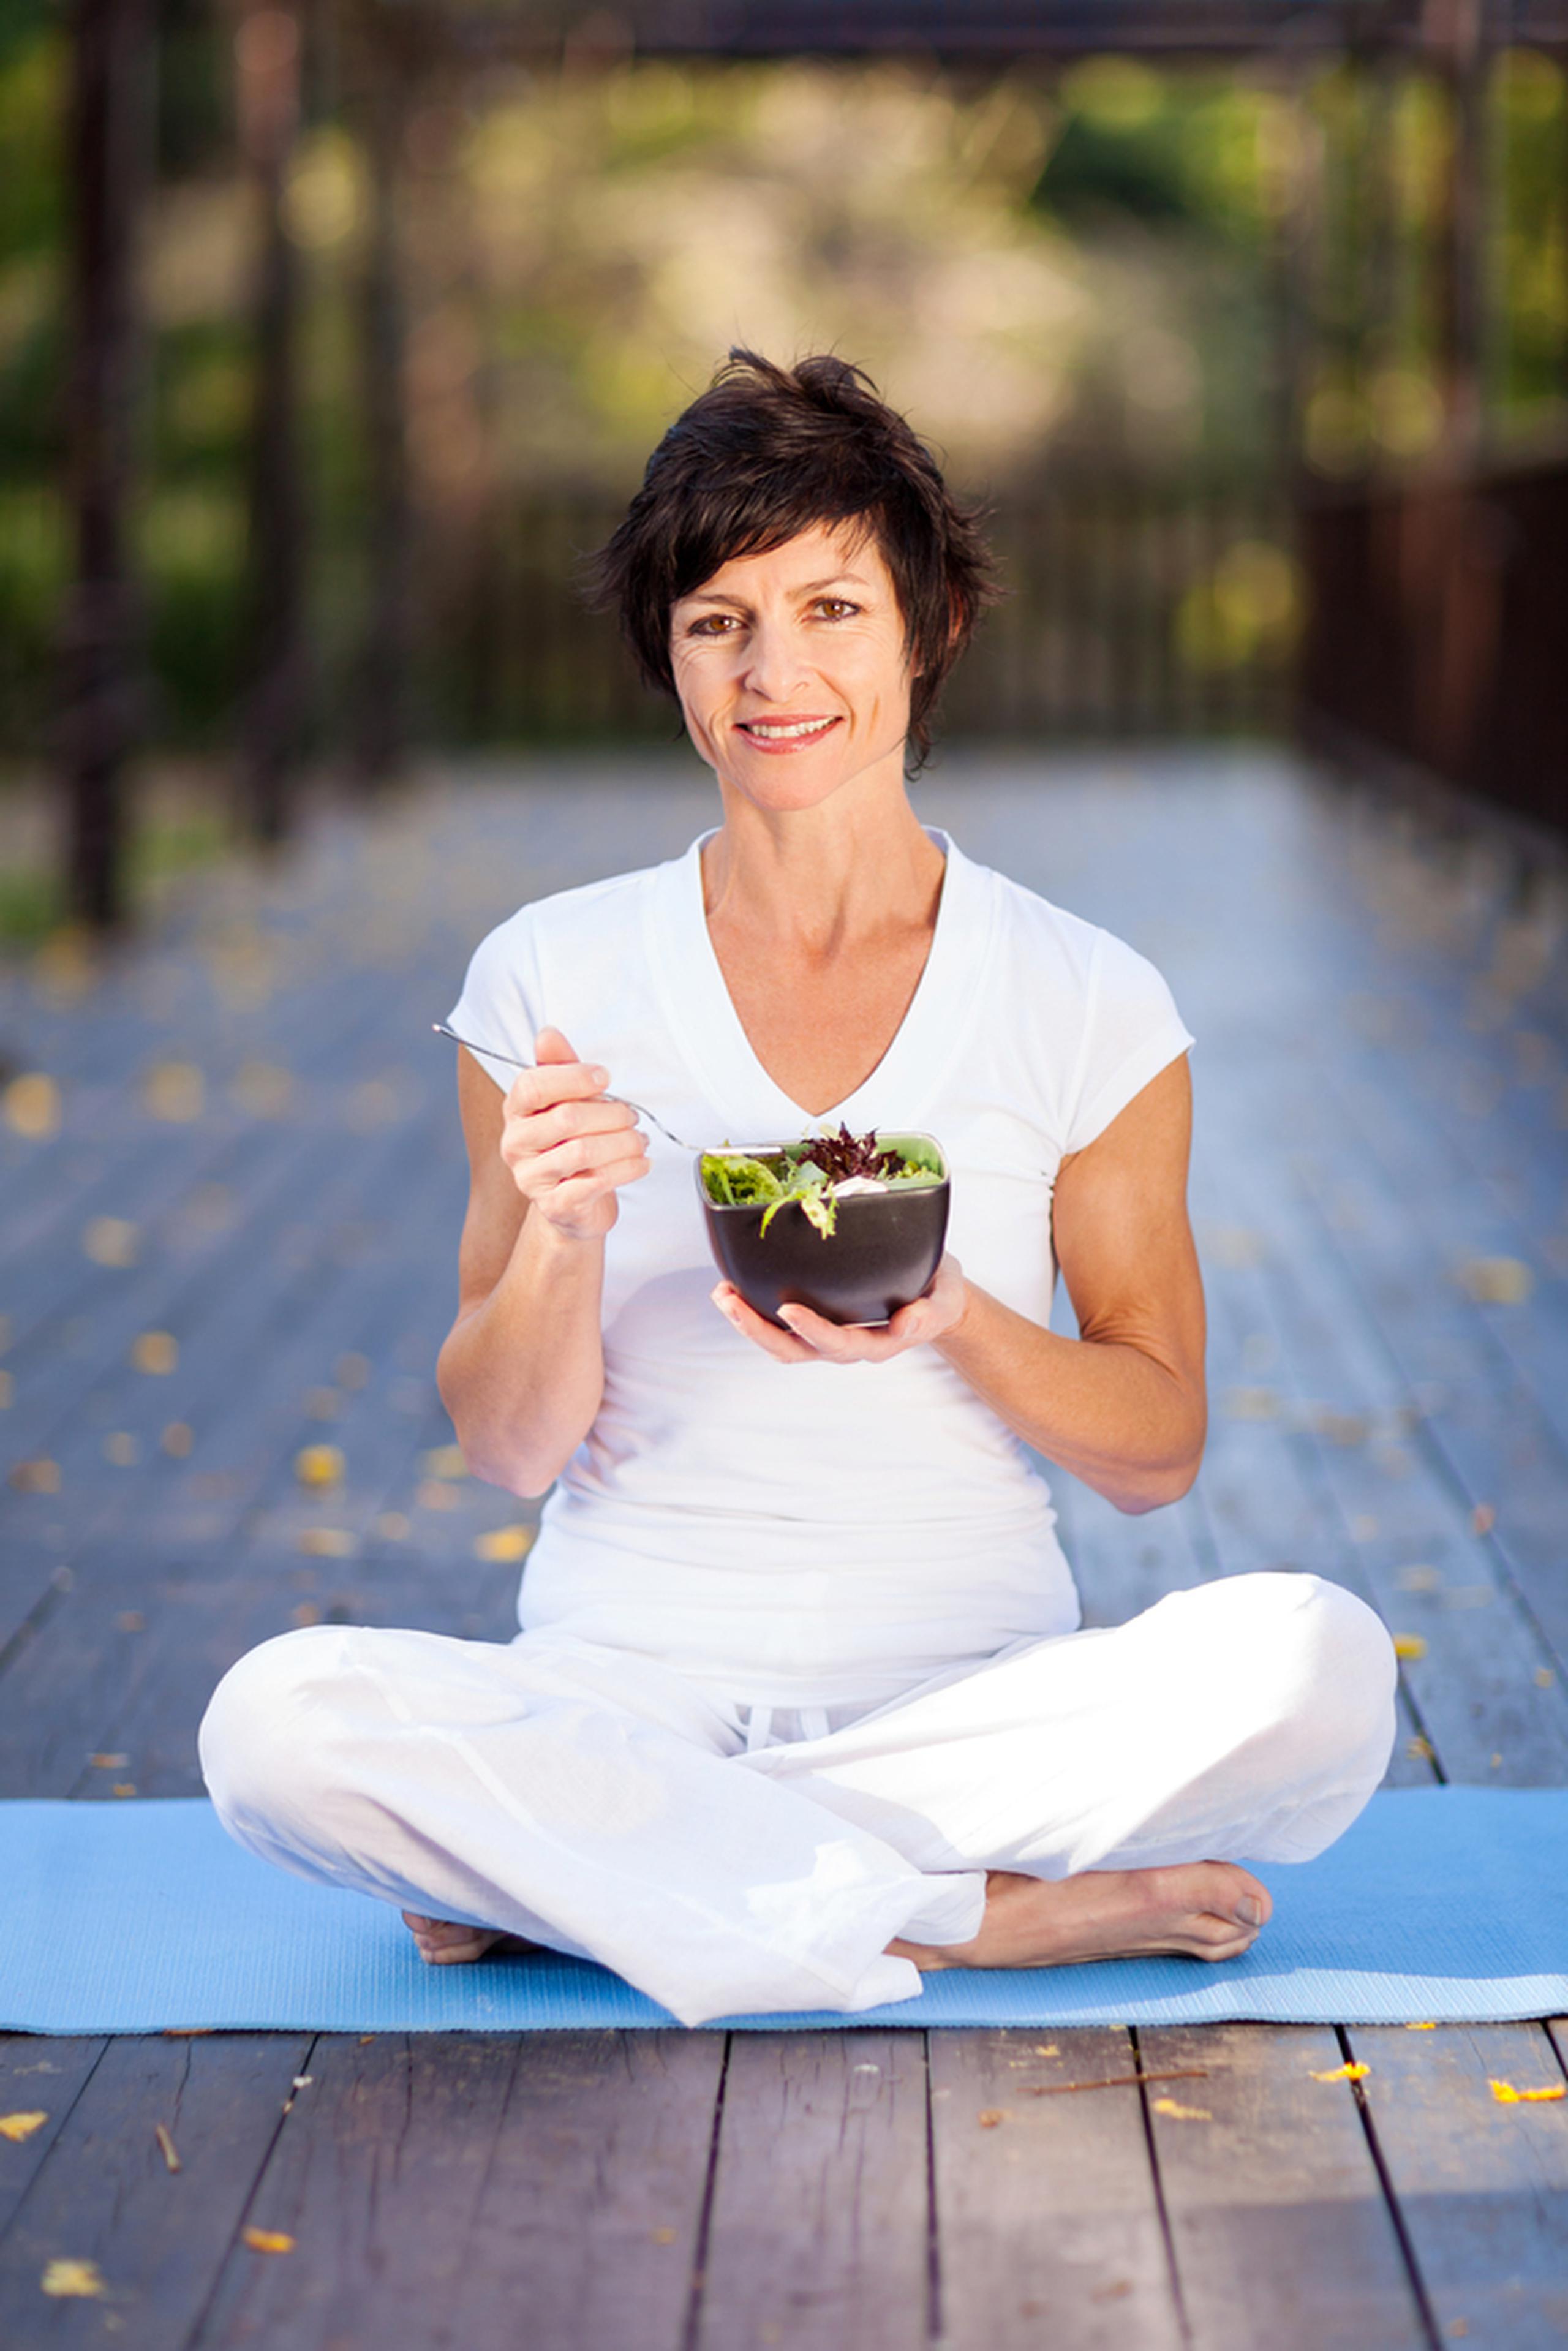 Para manejar adecuadamente los cambios de la menopausia y ayudar a la restauración del equilibrio hormonal, la alimentación saludable es una prioridad.